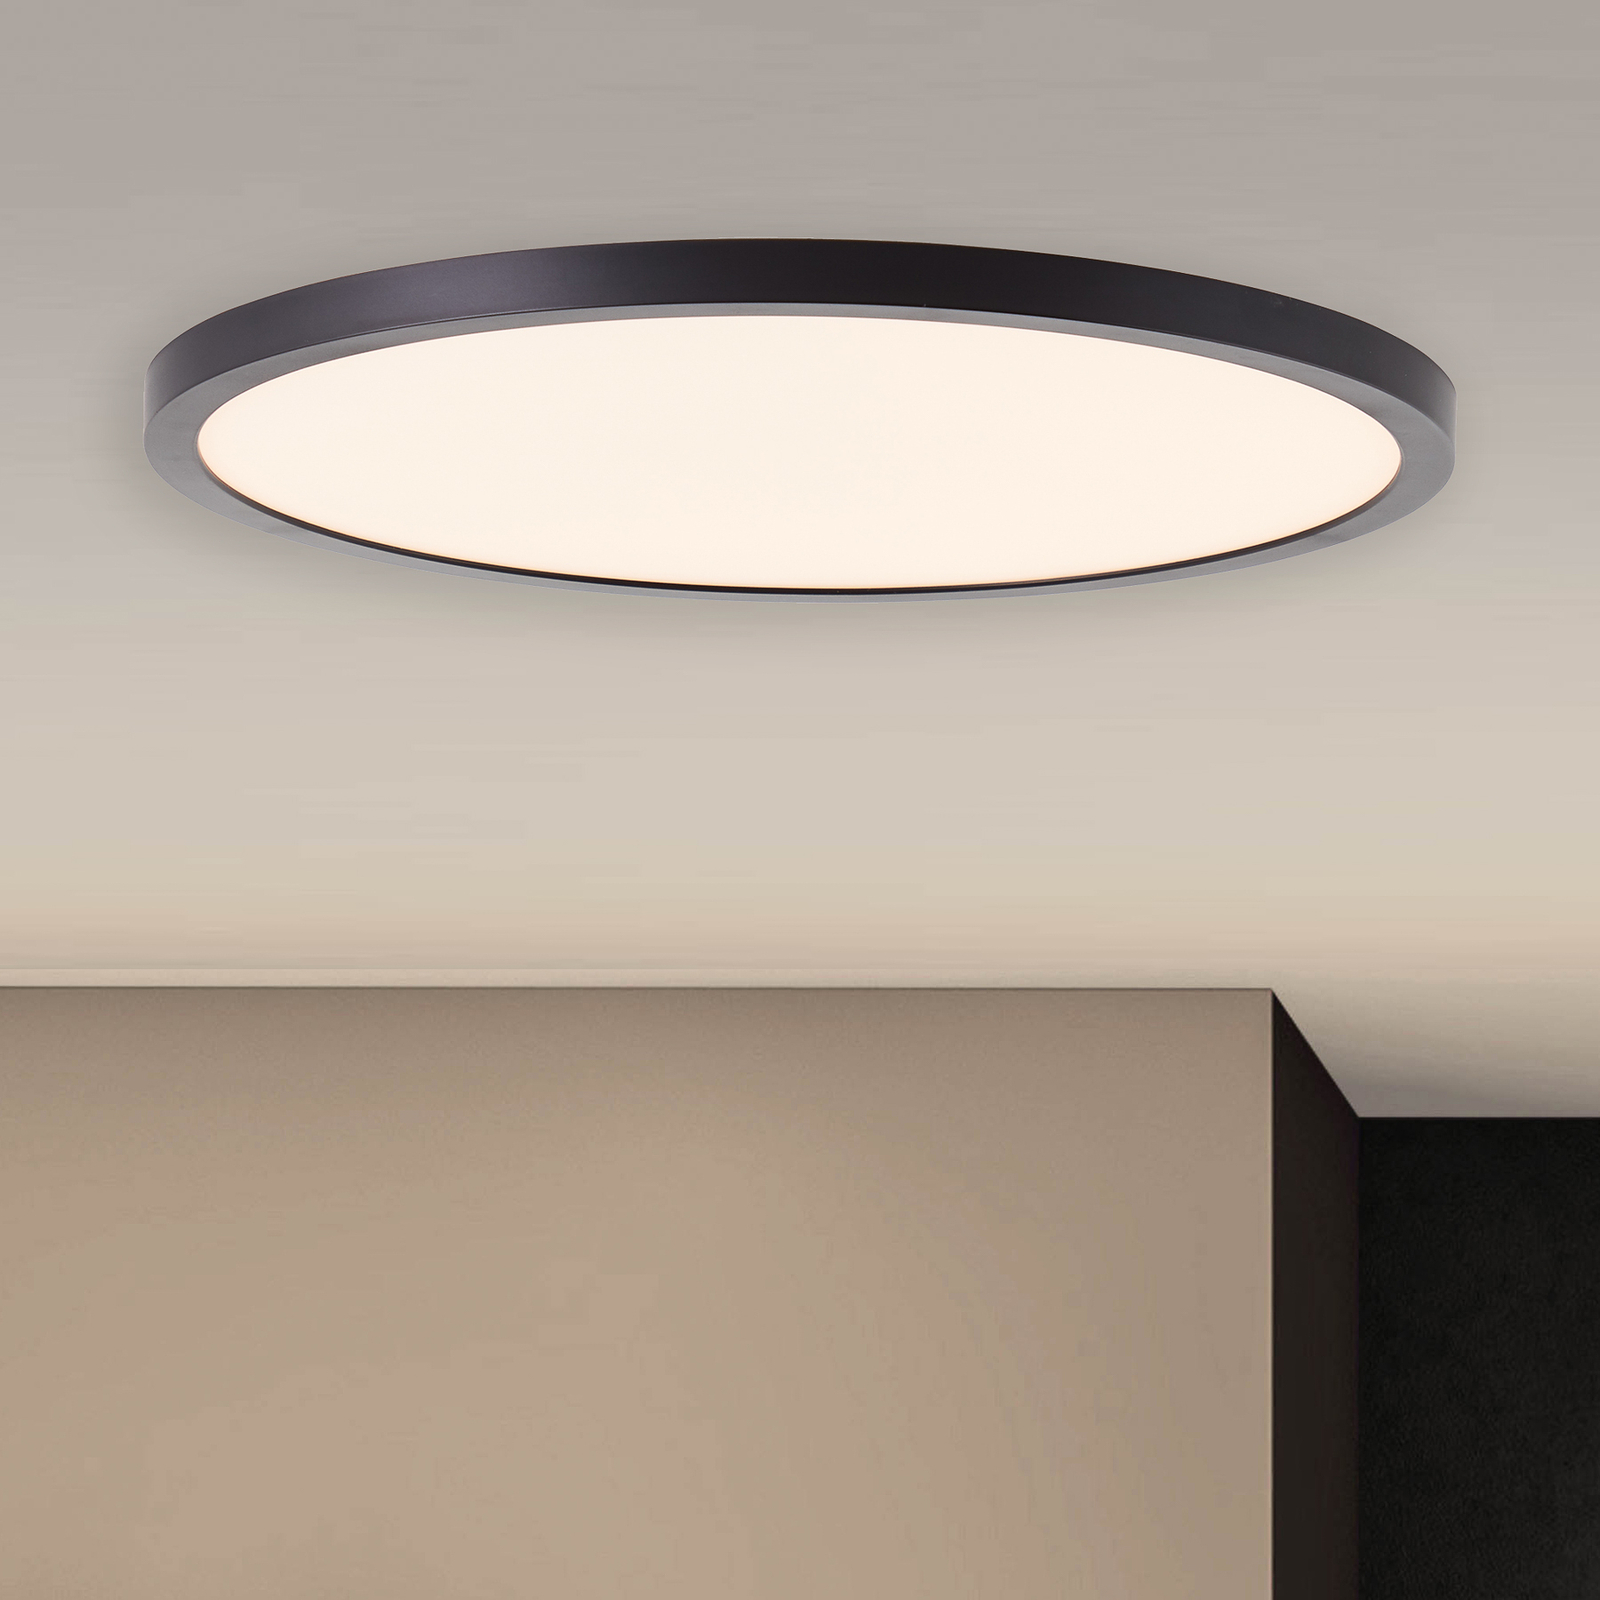 Verknald hospita Dijk LED plafondlamp Tuco, dimbaar, zwart, Ø 30 cm | Lampen24.nl